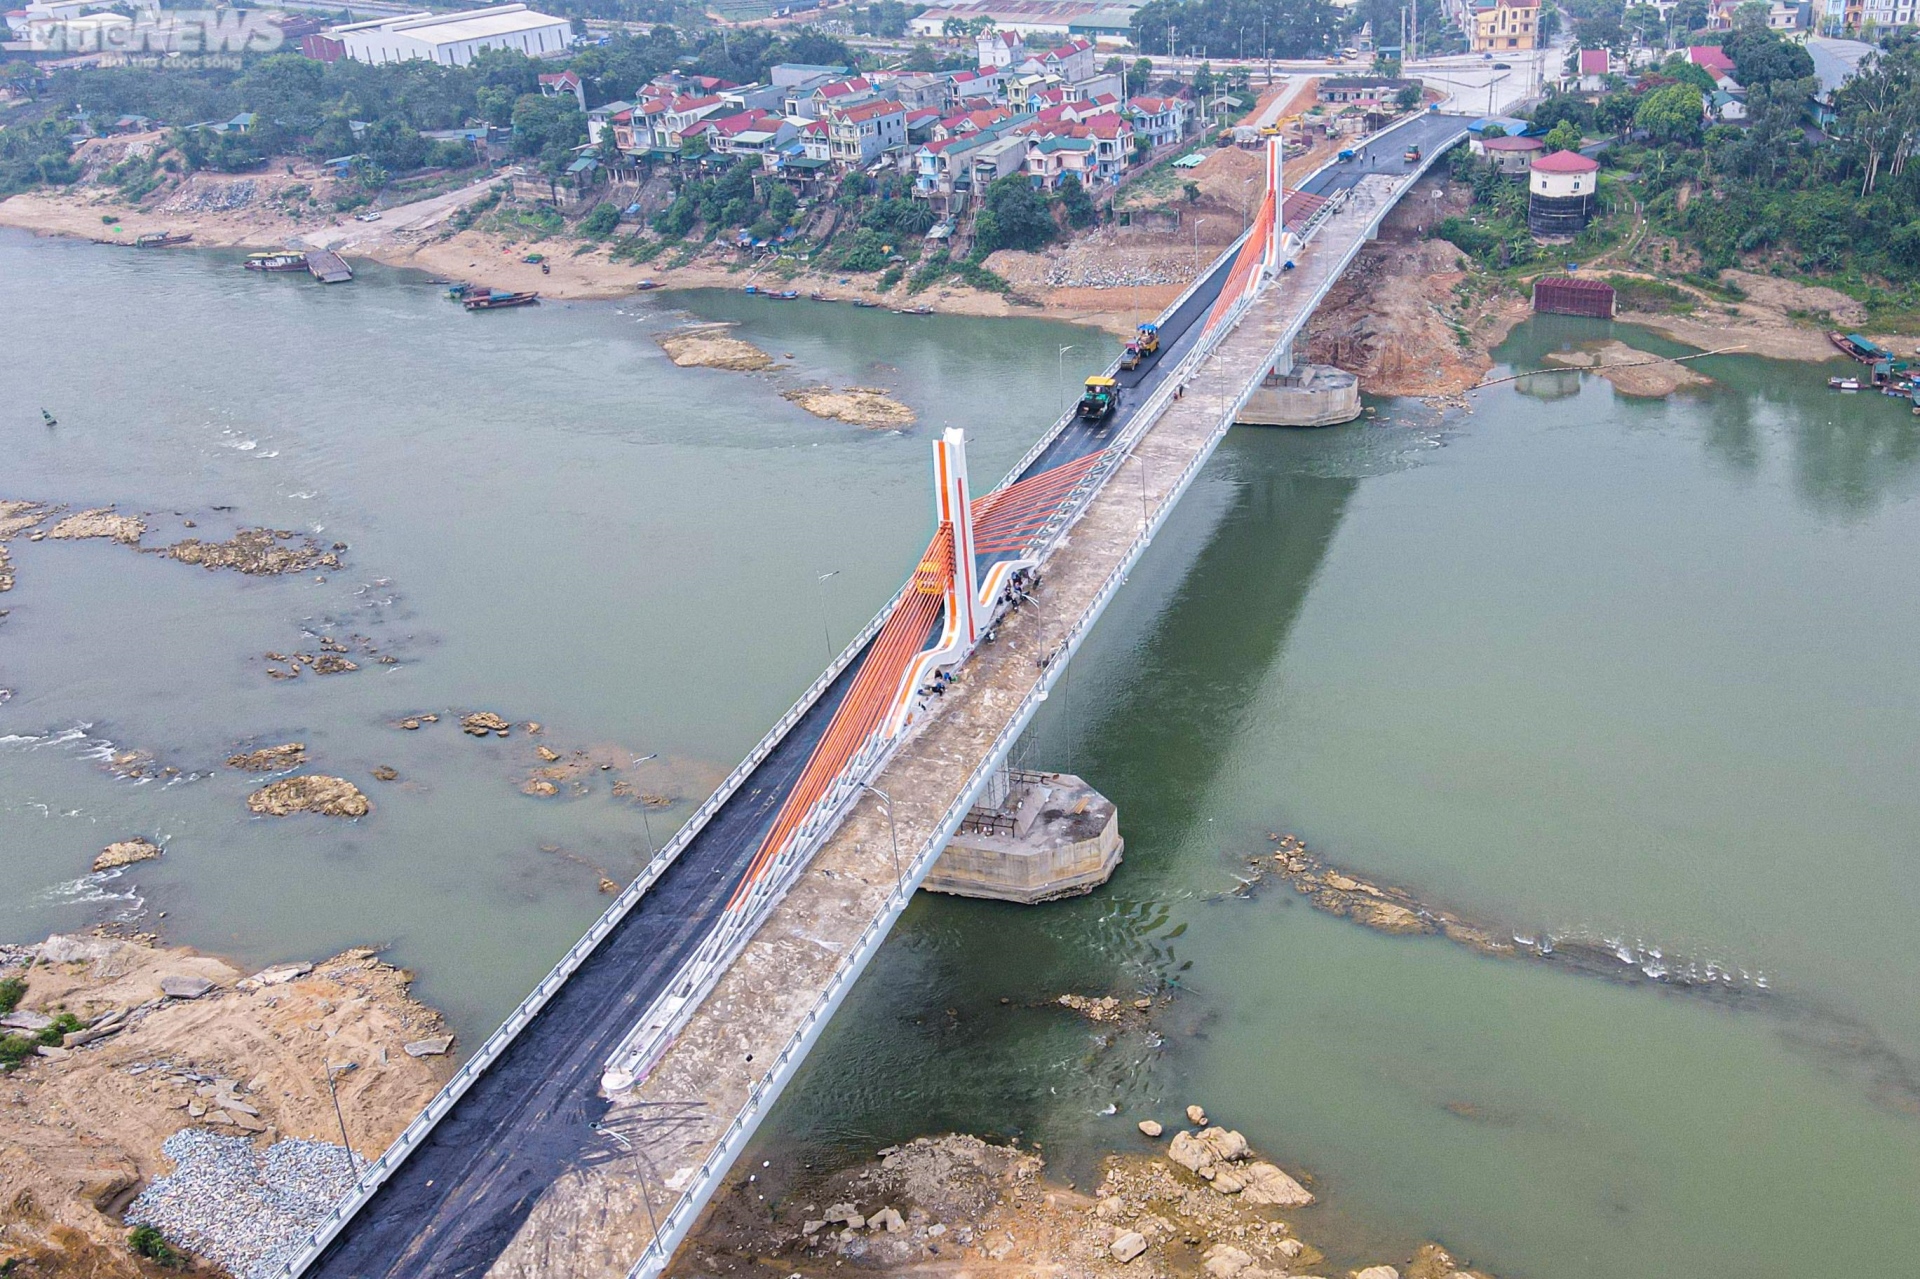 Chiêm ngưỡng cây cầu 540 tỷ đồng nối 2 tỉnh Vĩnh Phúc và Phú Thọ - Ảnh 4.